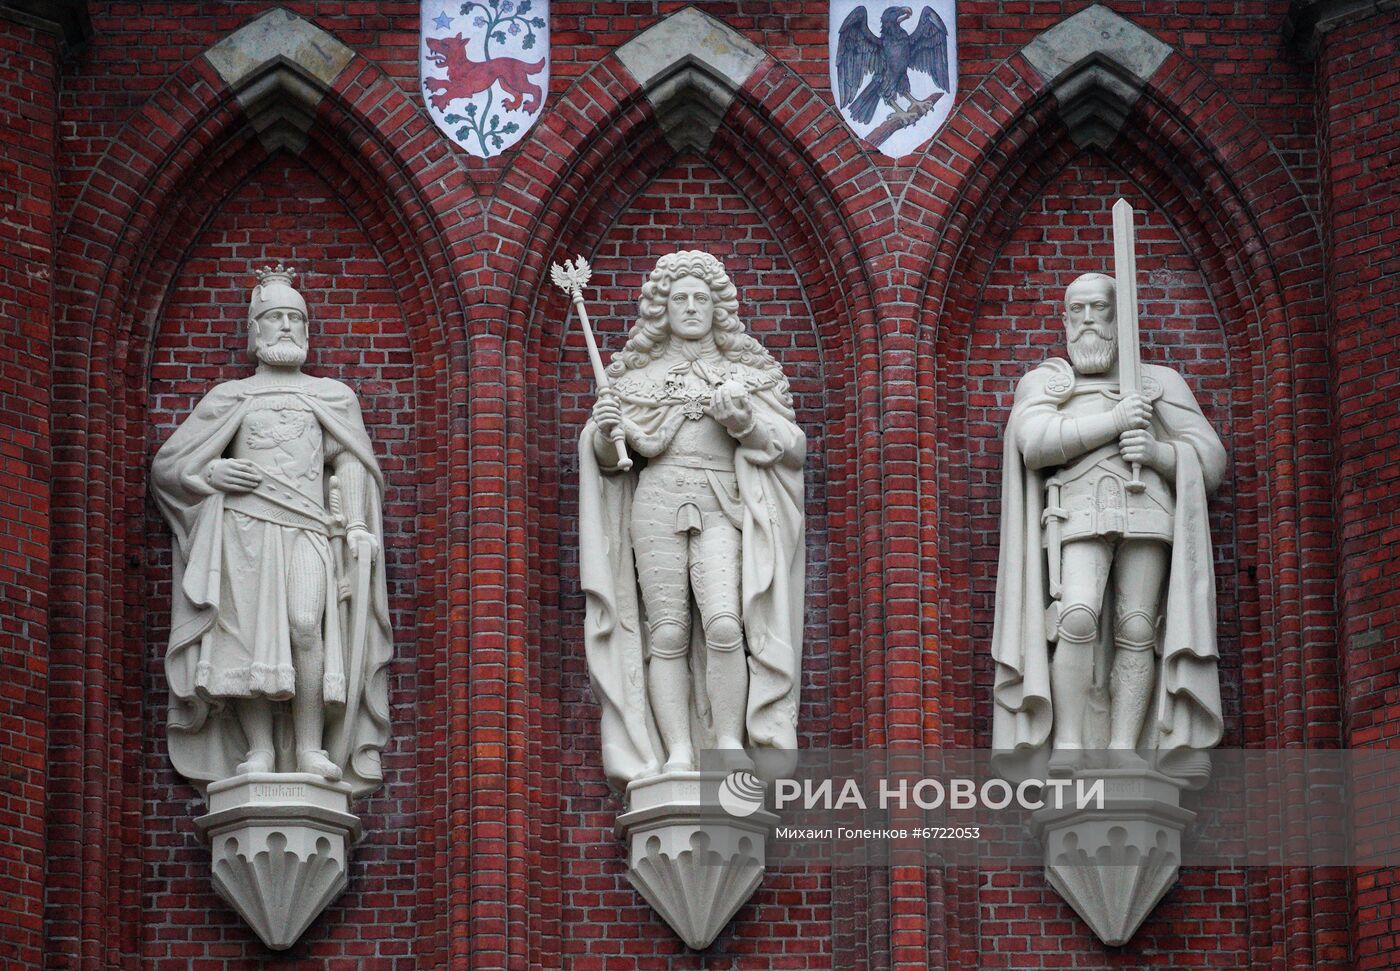 Открытие Королевских ворот после реставрации в Калининграде